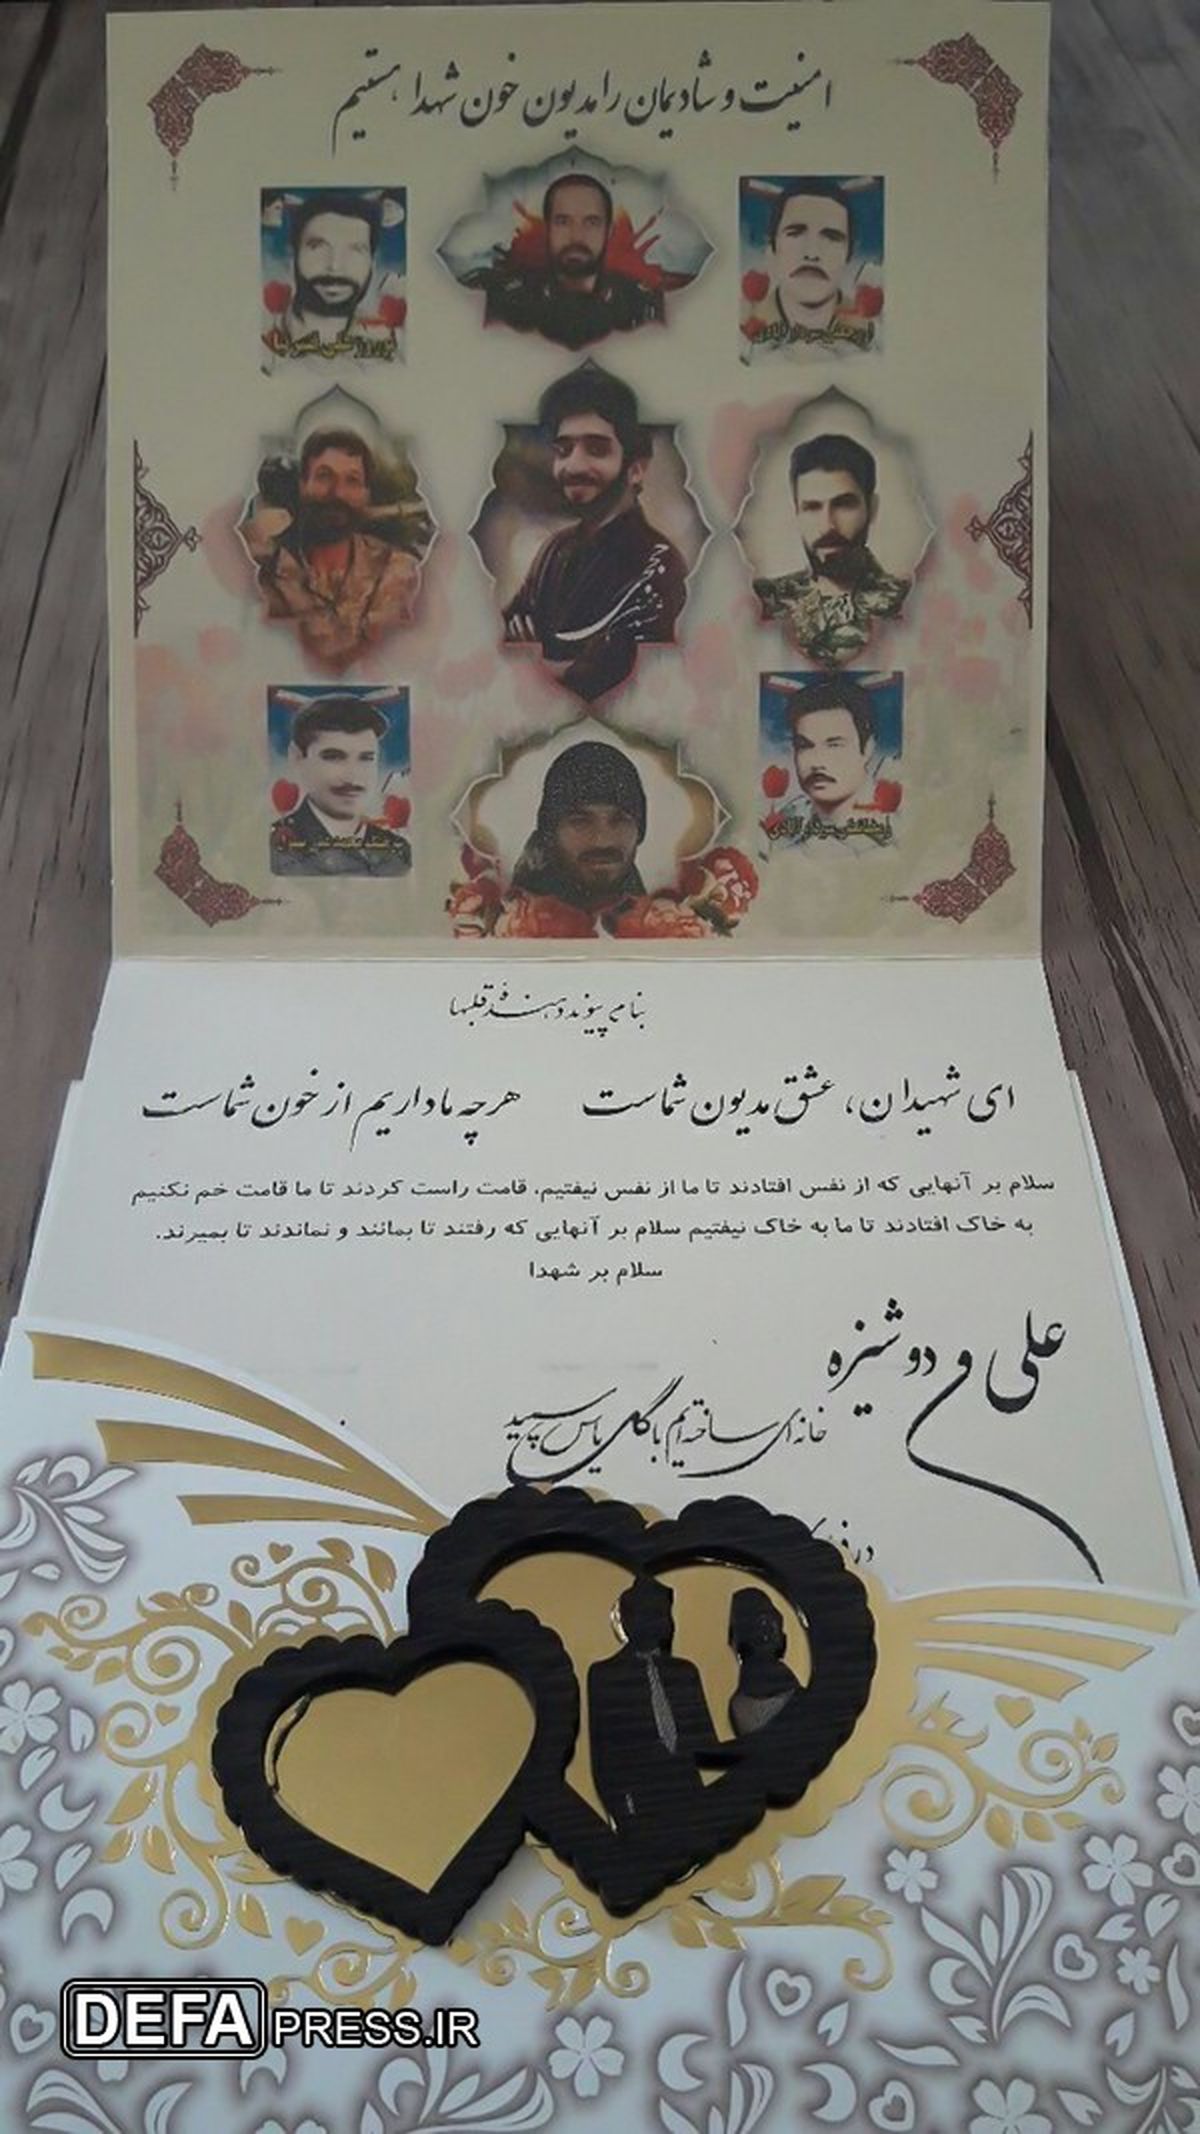 تصویر شهید حججی در کارت عروسی زوج جوینی